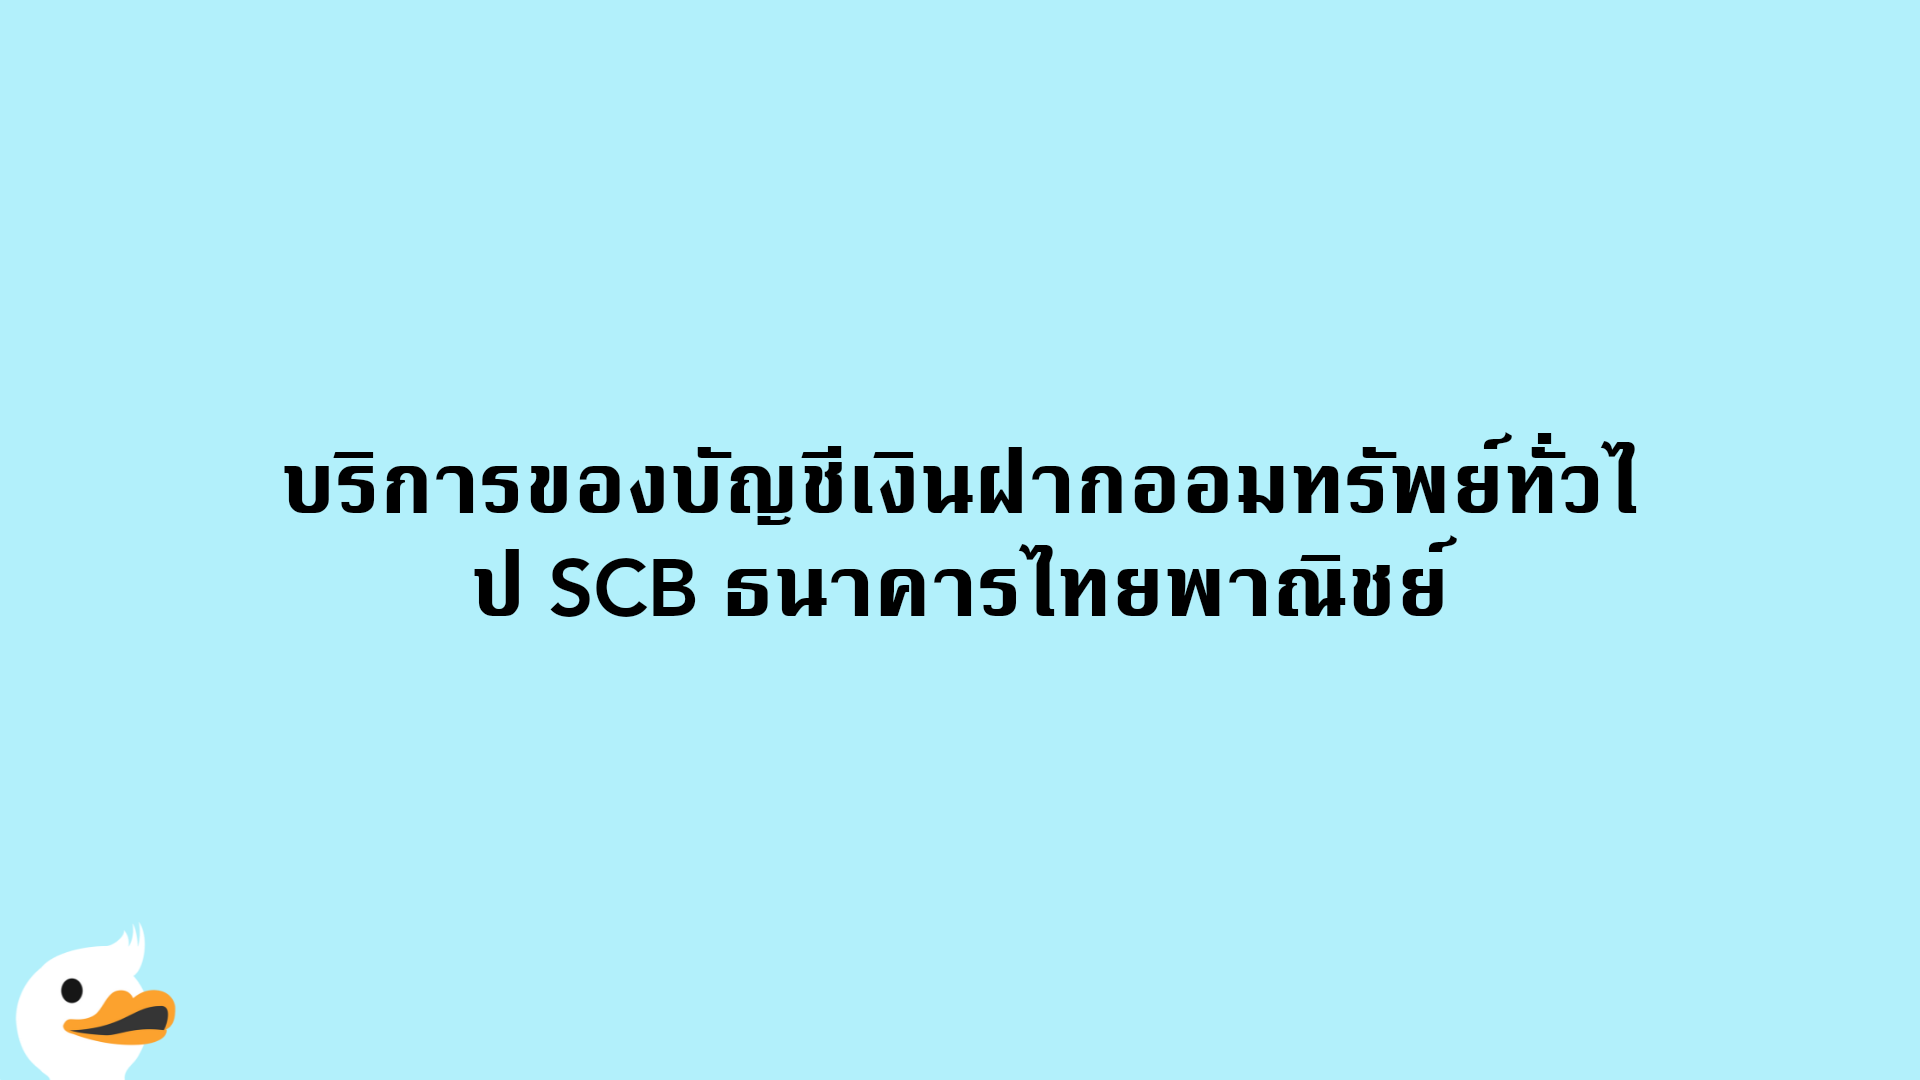 บริการของบัญชีเงินฝากออมทรัพย์ทั่วไป SCB ธนาคารไทยพาณิชย์